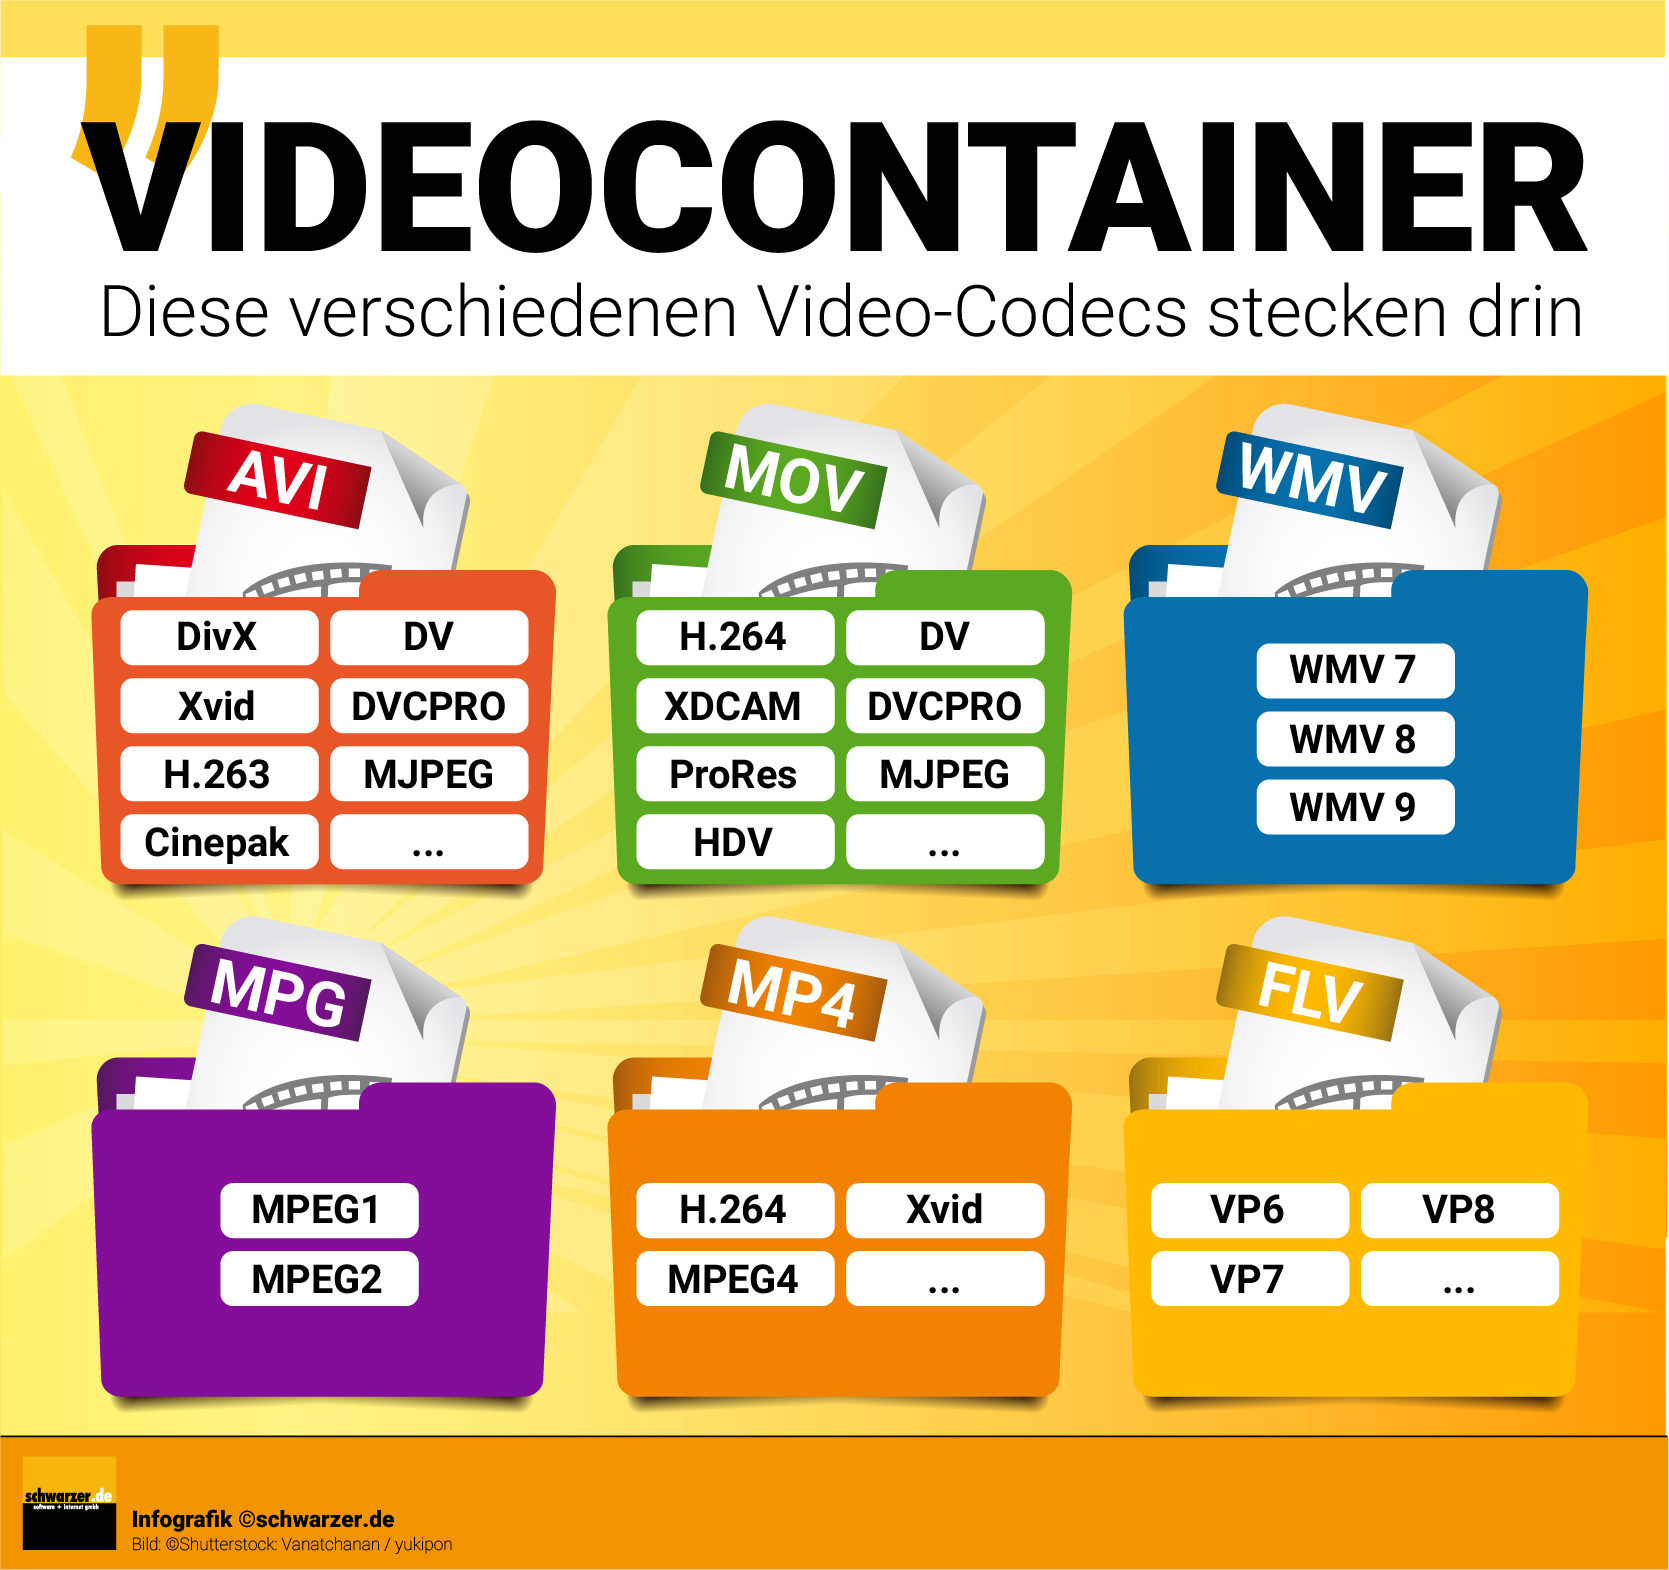 Infografik: Diese Video-Codecs stecken in den unterschiedlichen Videocontainern drin.